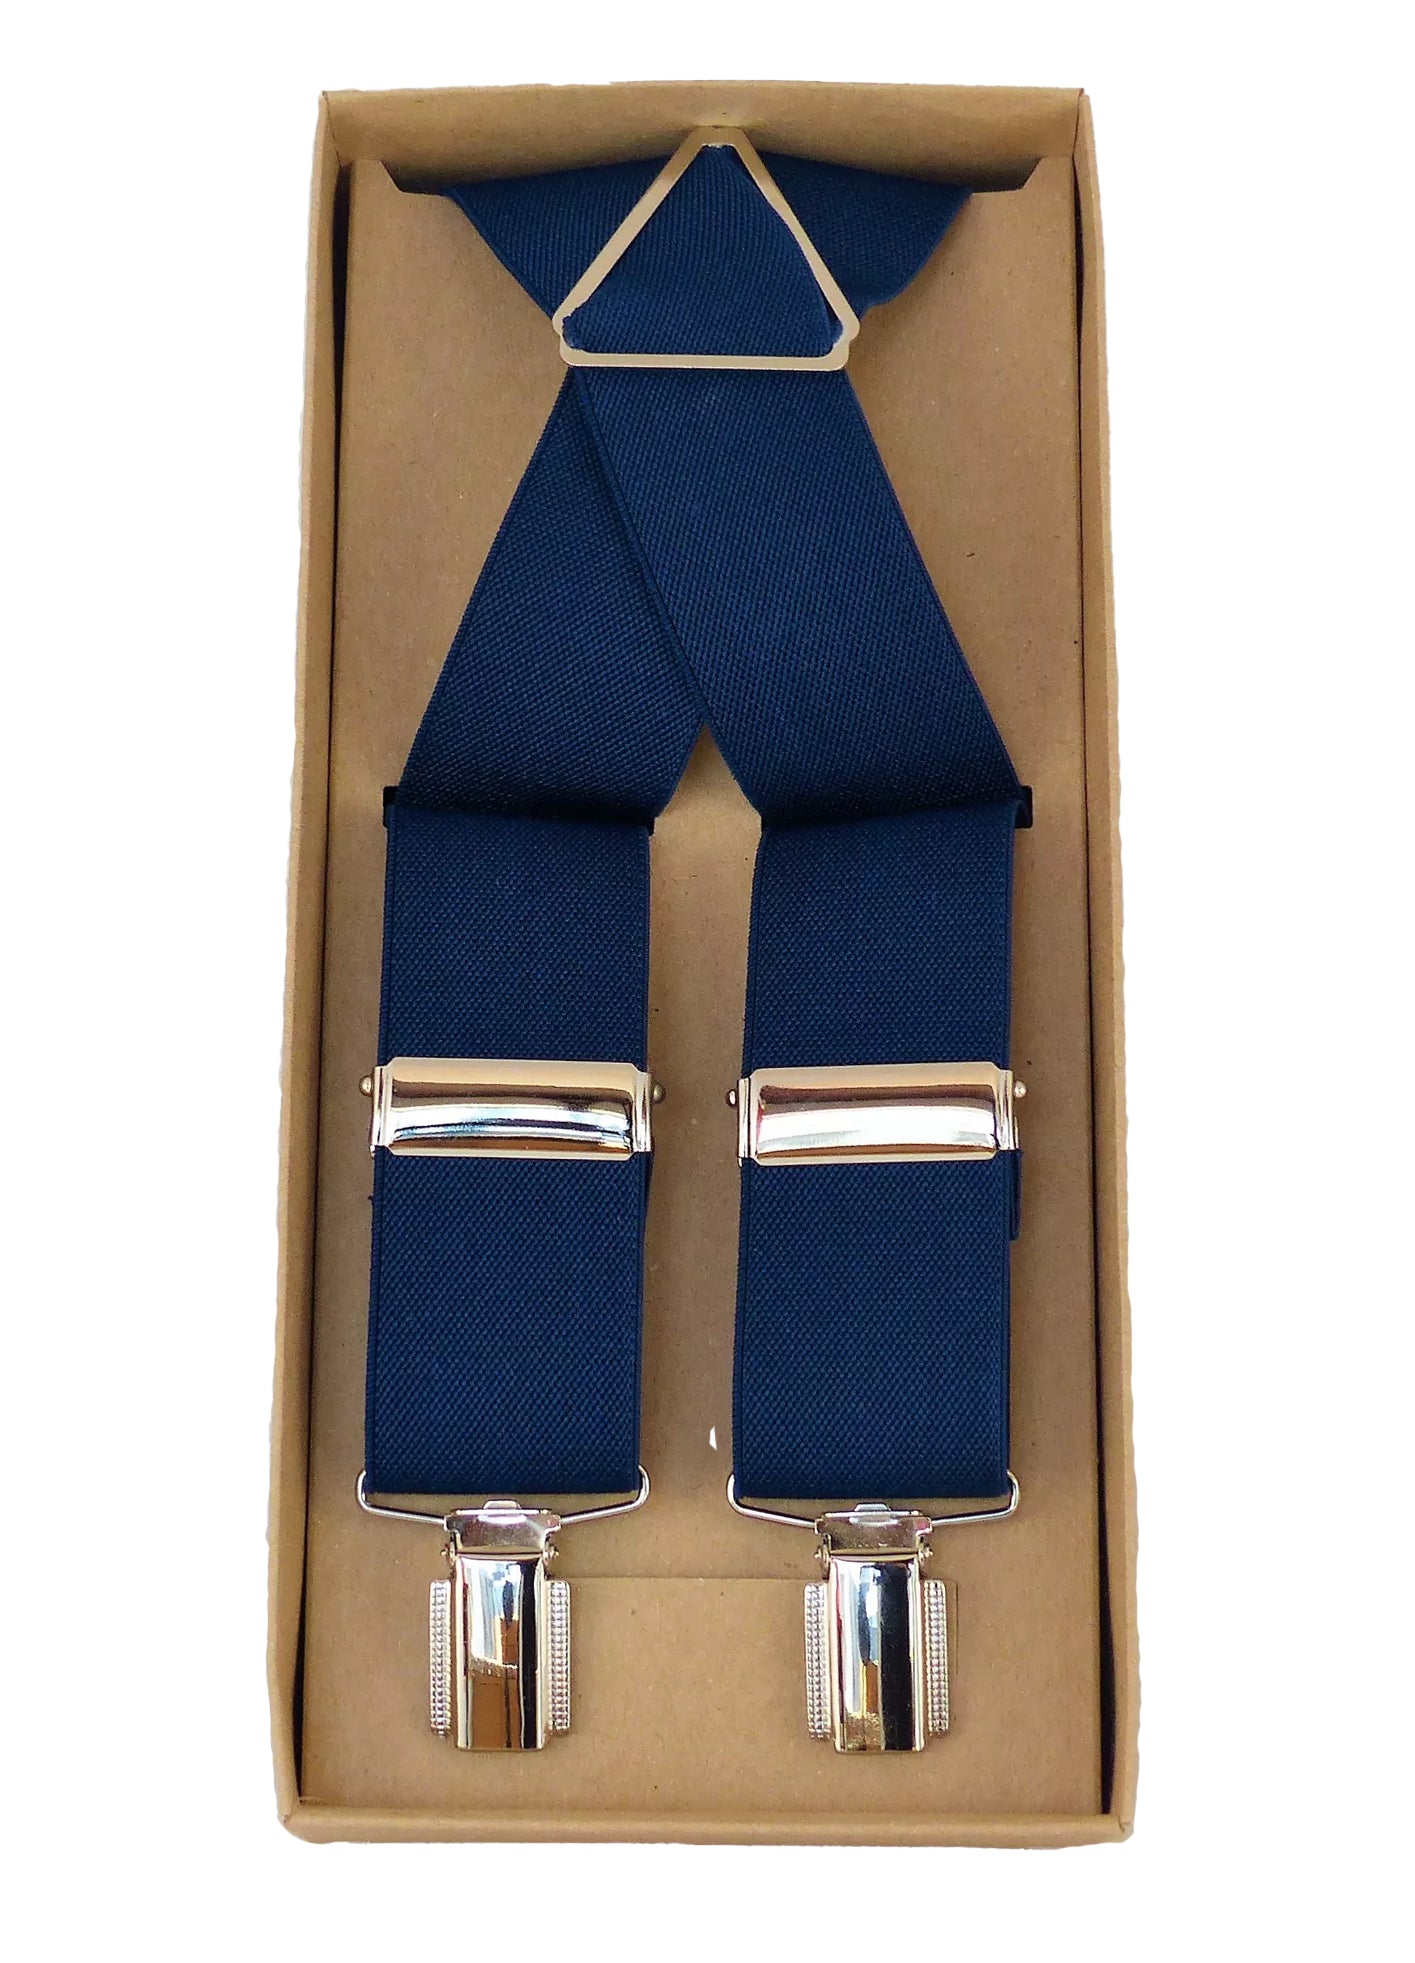 Vollelastische Hosenträger in X Form, 3,5 cm breit in tollen Farben